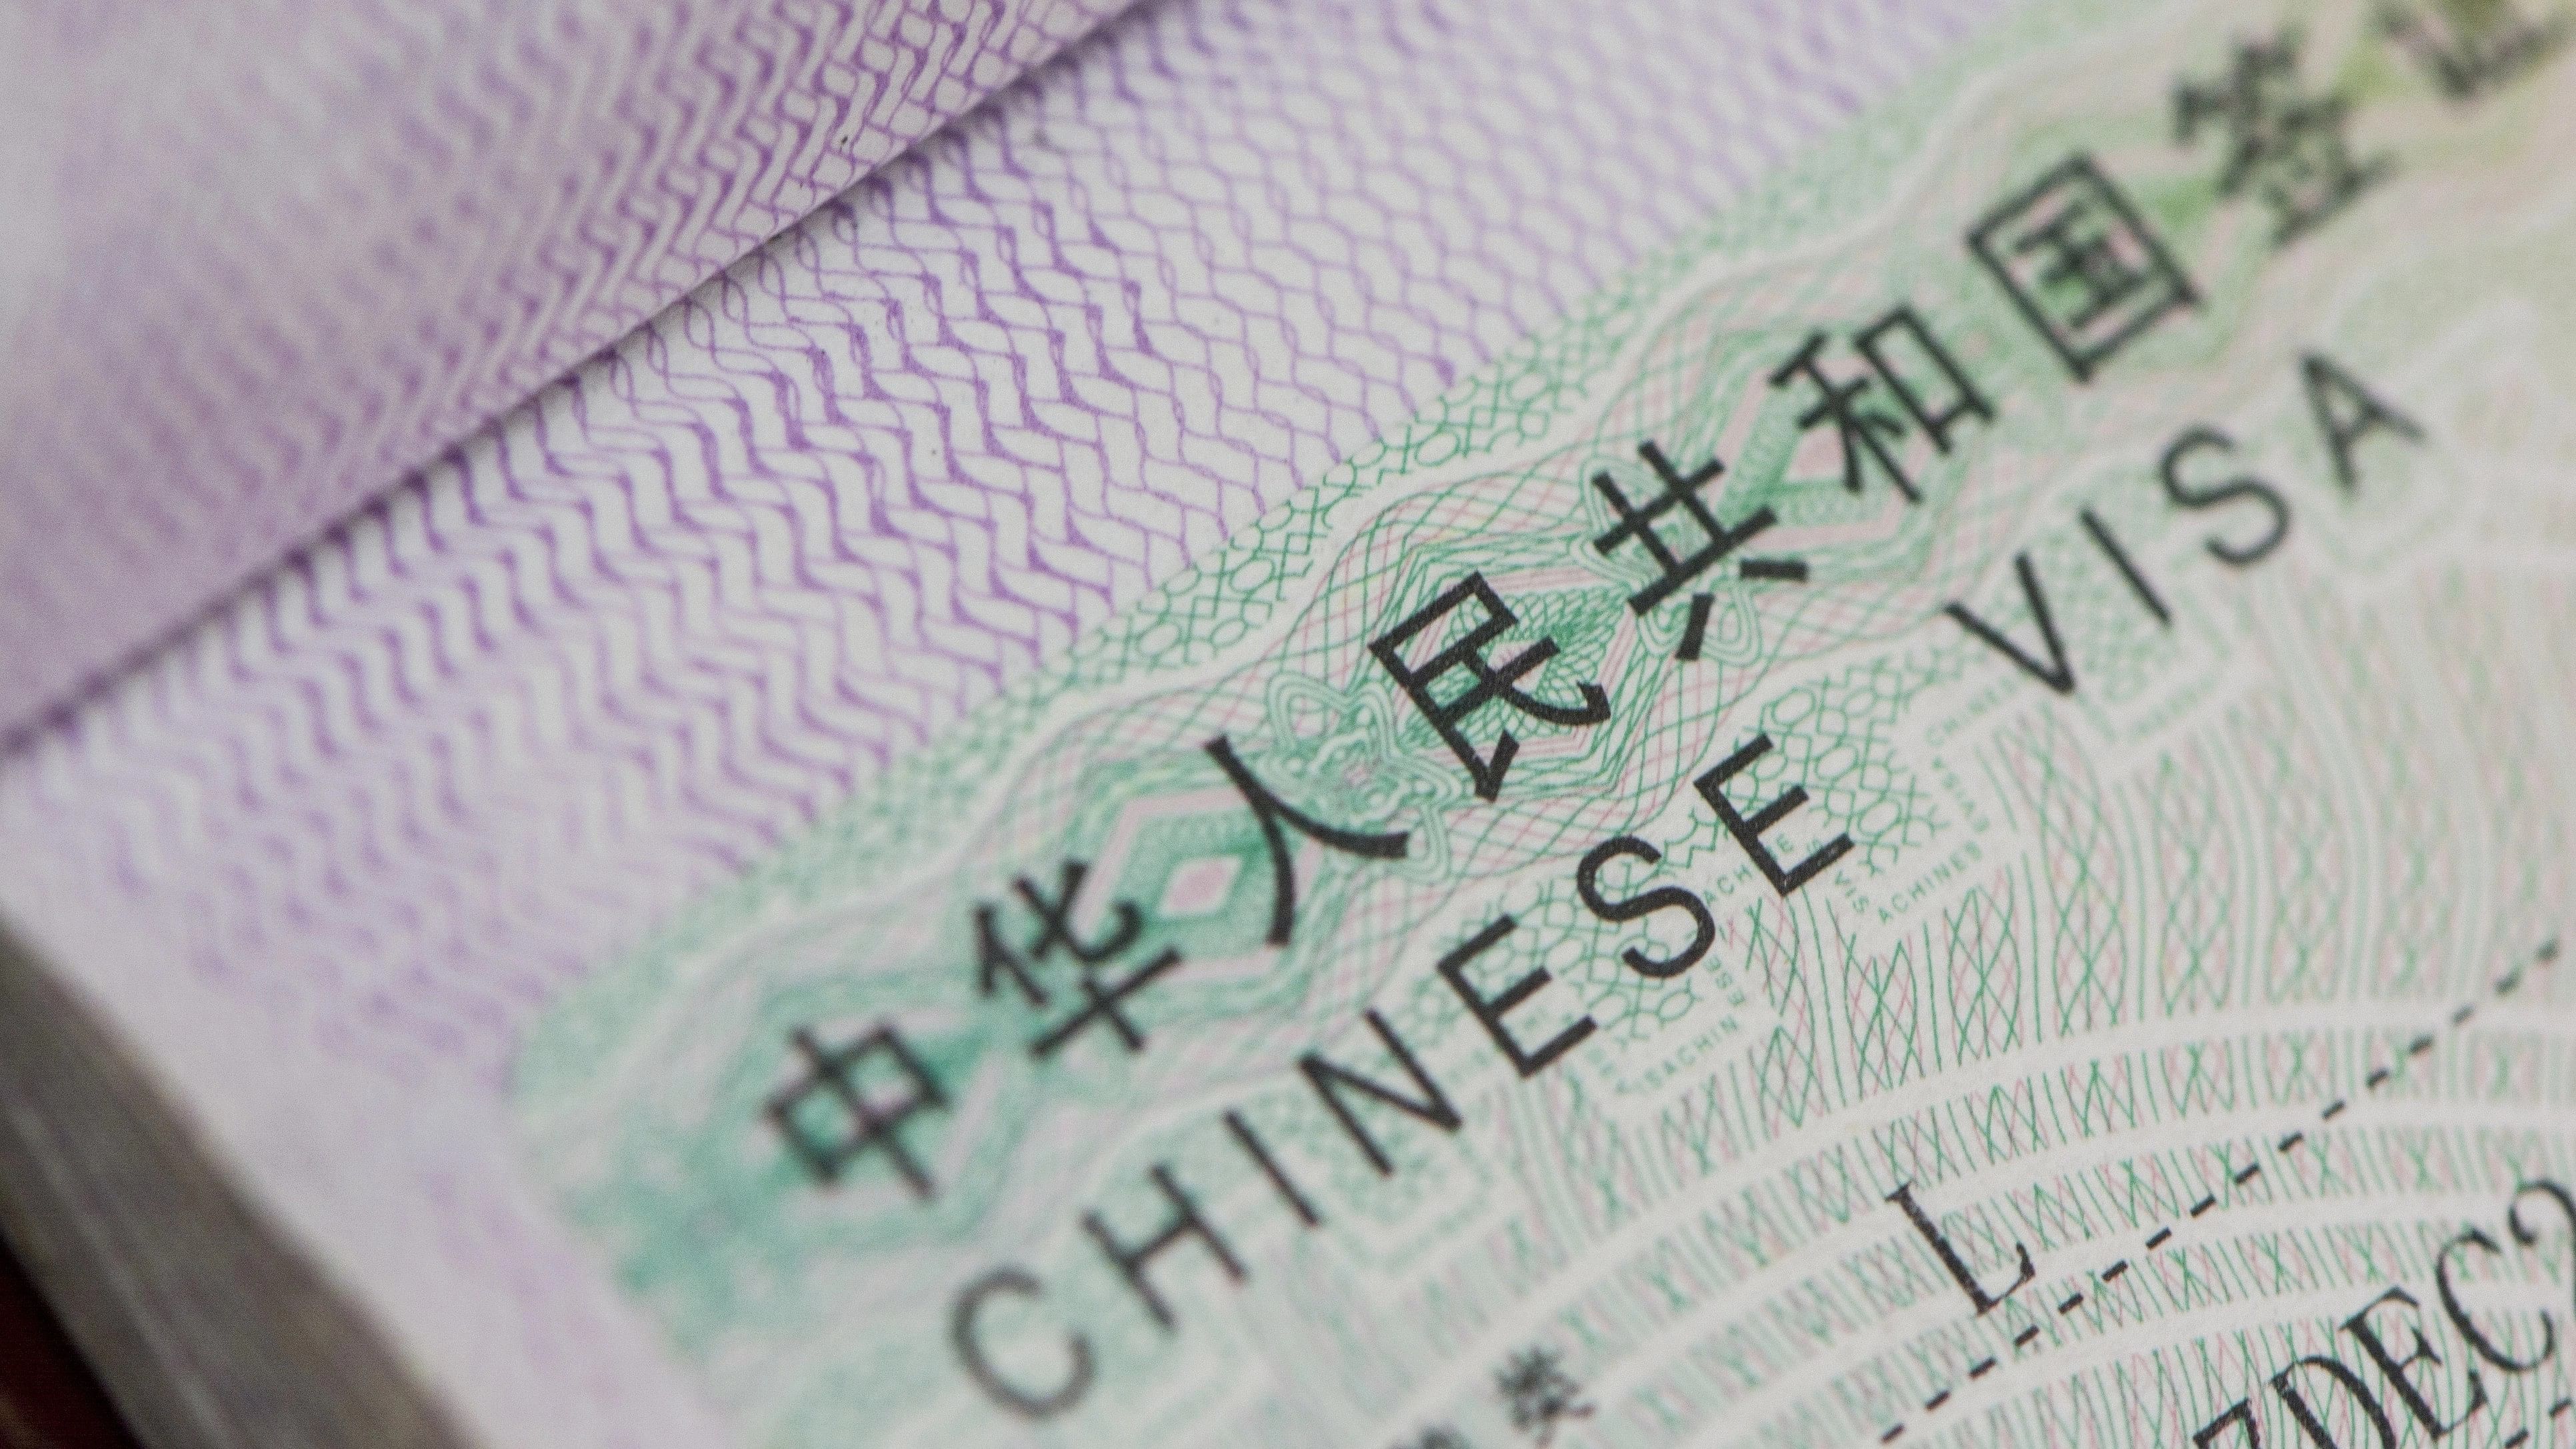 <div class="paragraphs"><p>Representative image of a Chinese visa.</p></div>